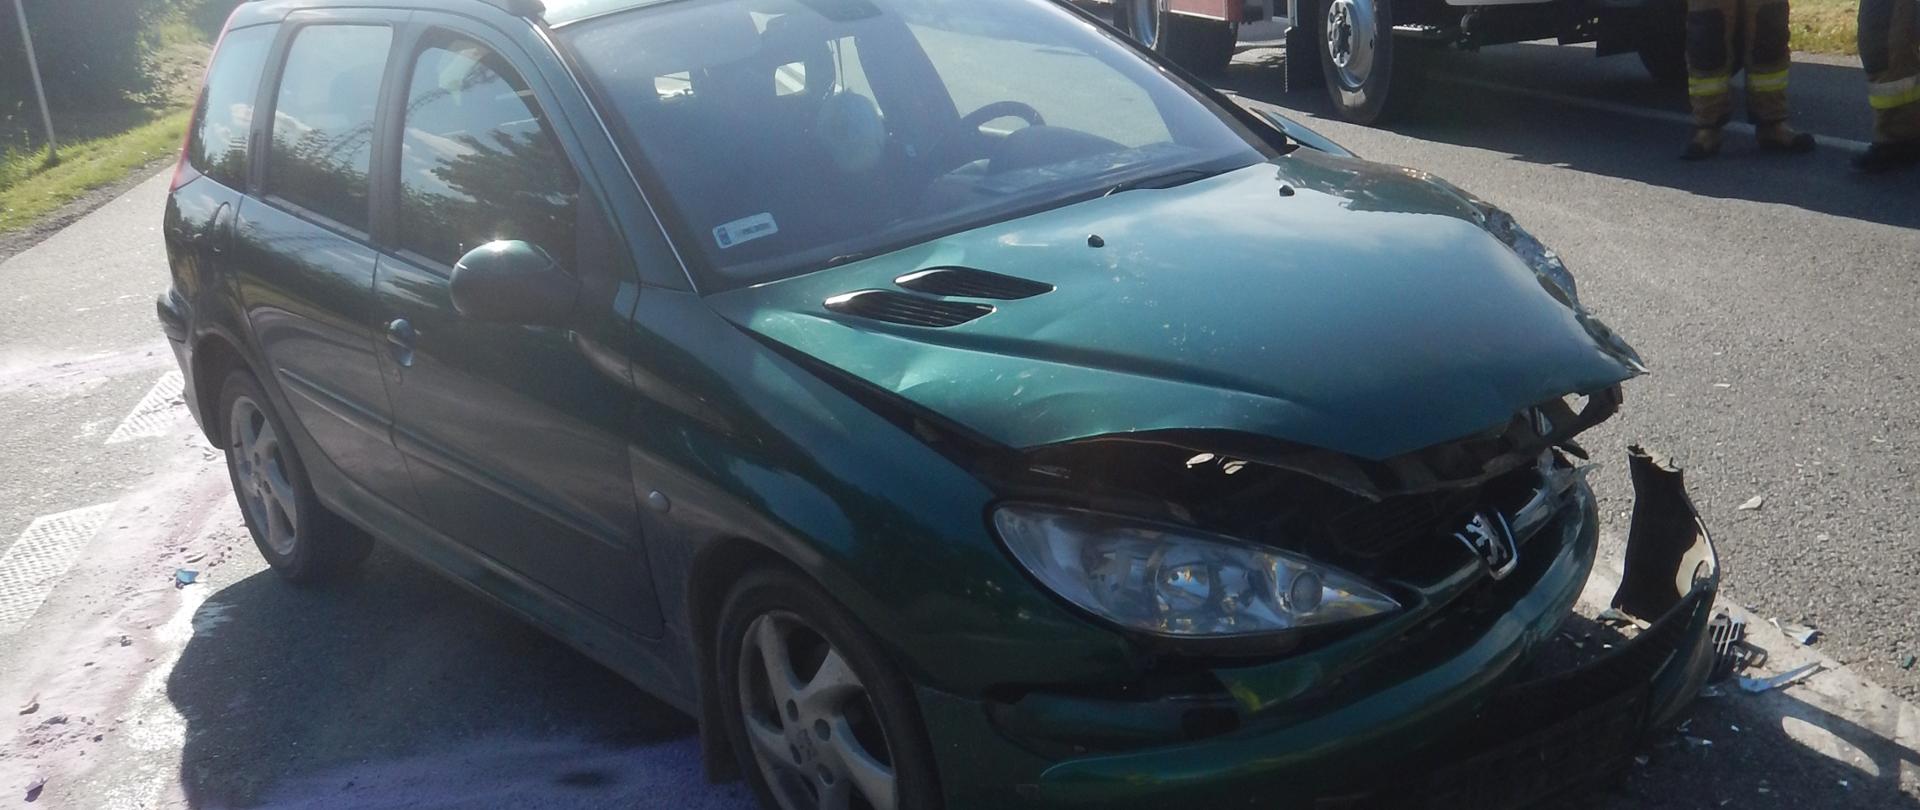 Zdjęcie przedstawia rozbity przód samochodu osobowego marki Peugeot